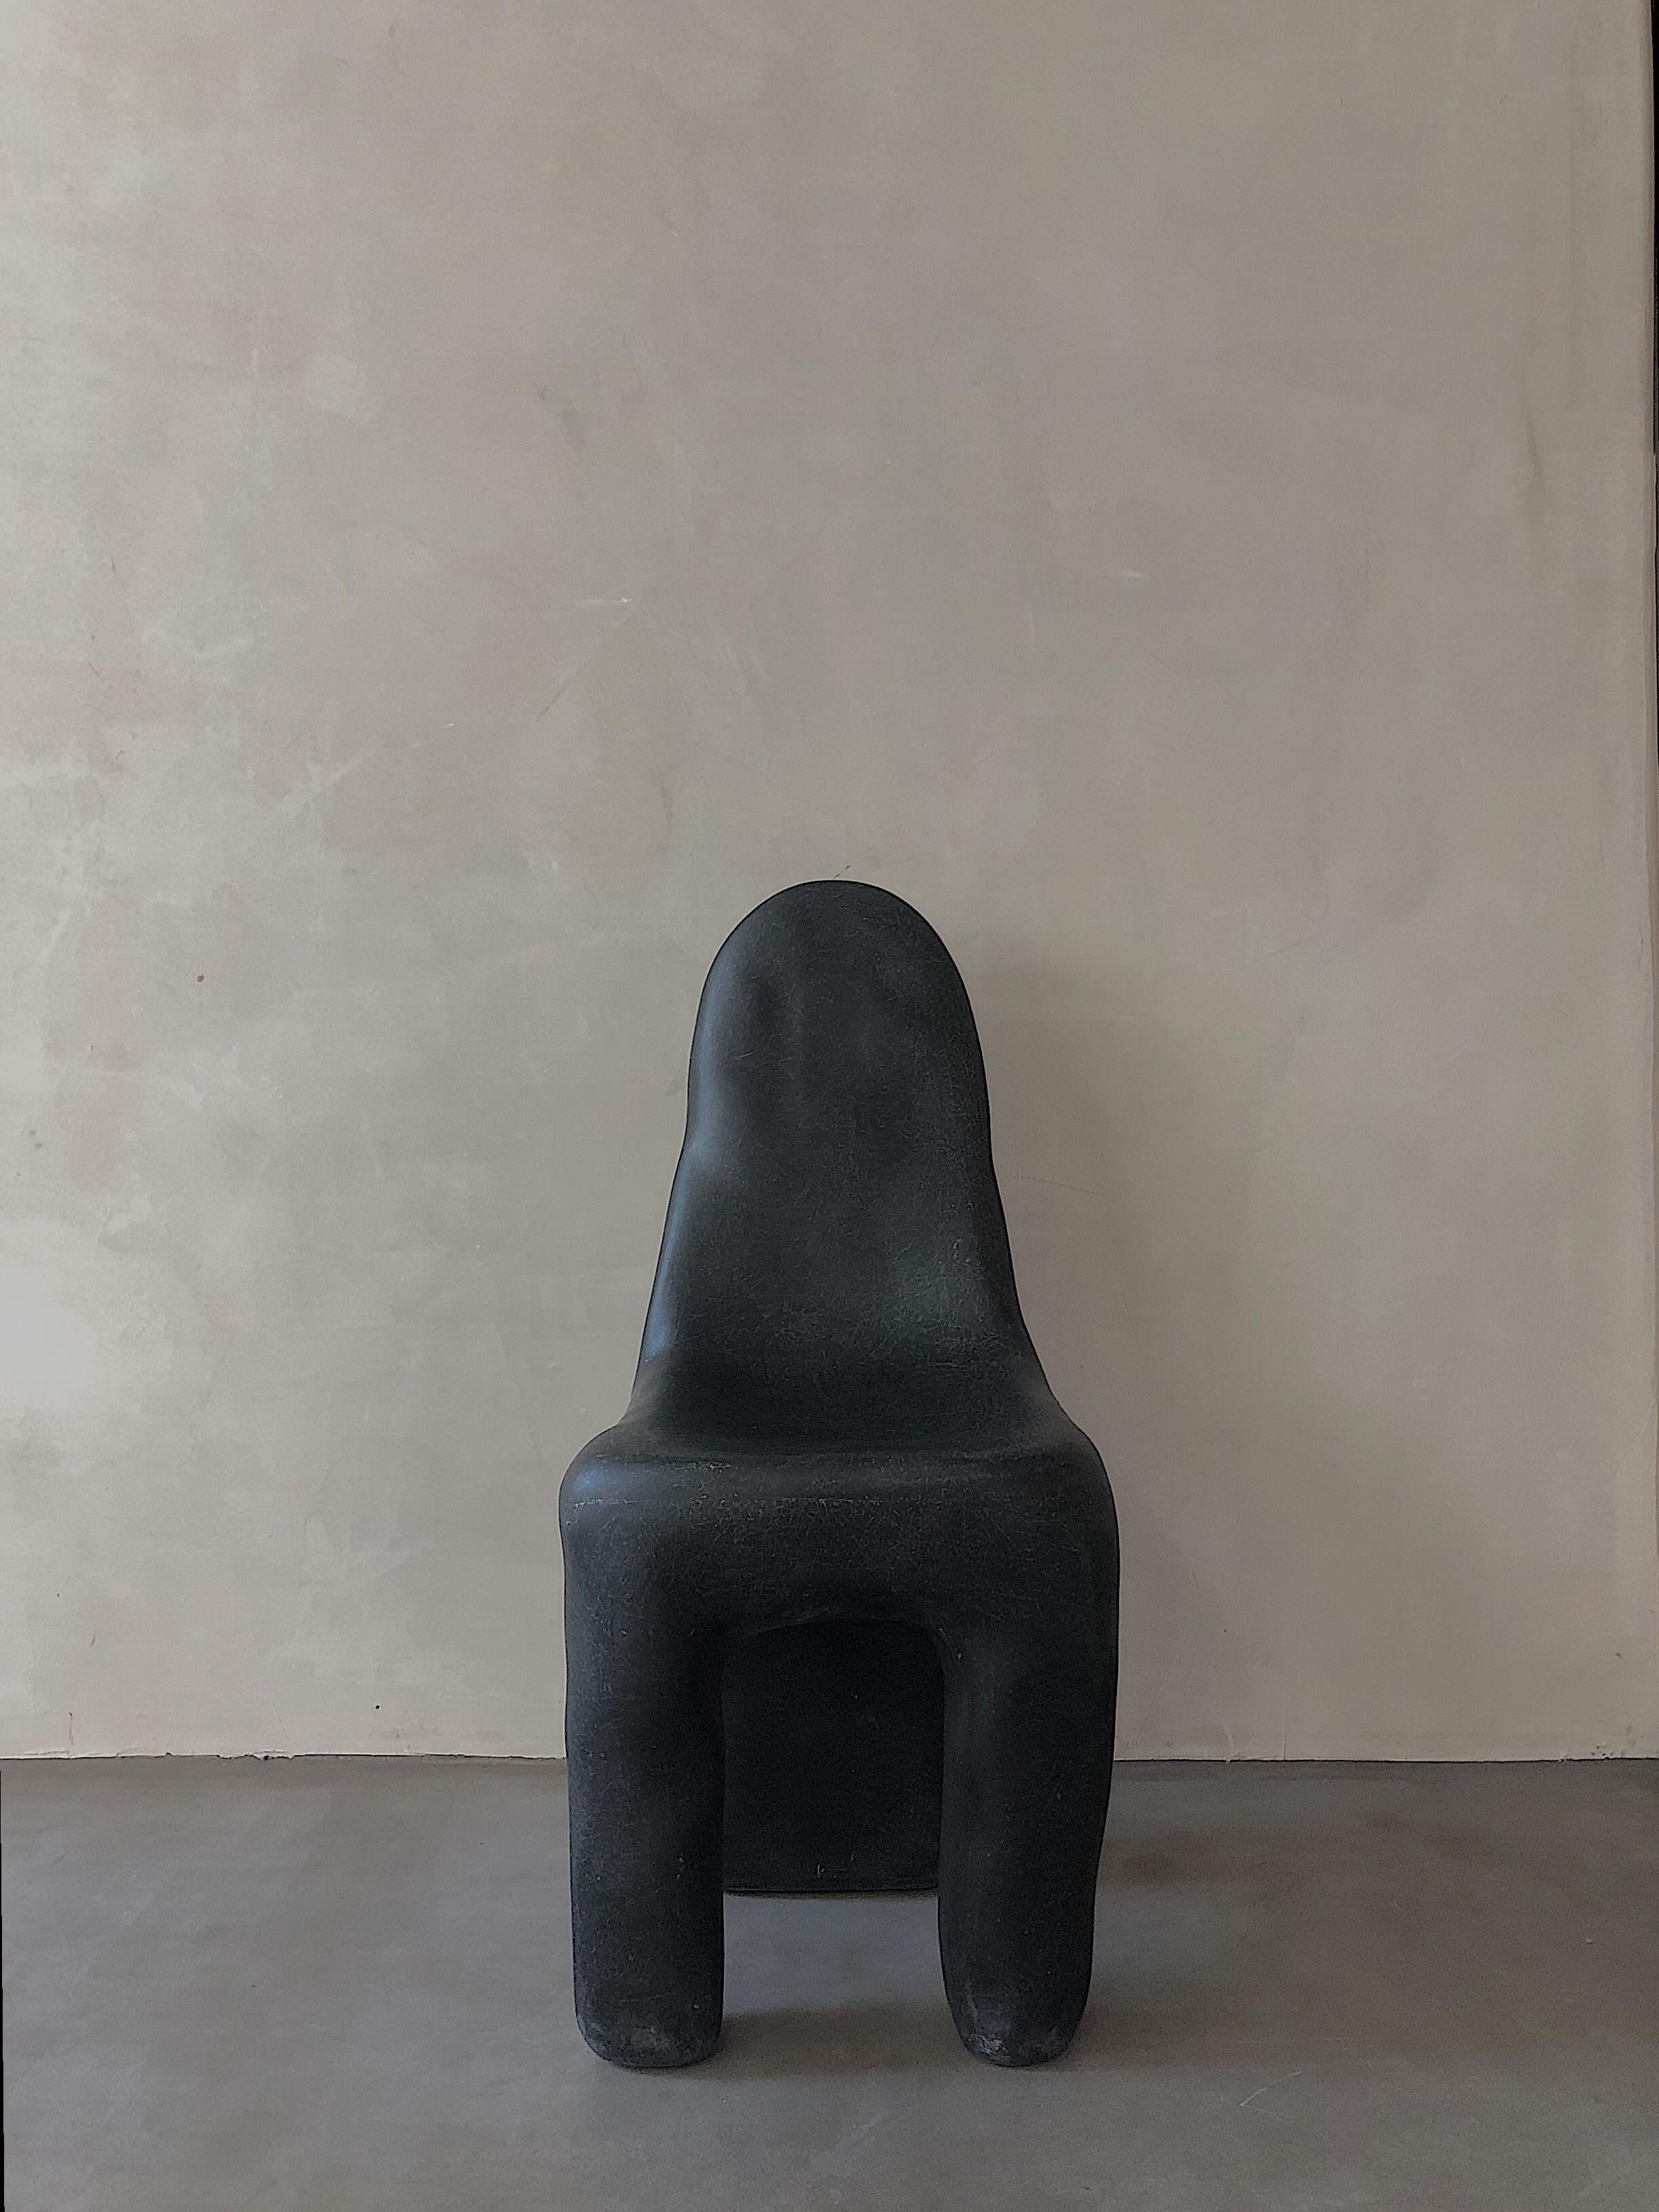 Schwarzer Playdough-Stuhl von kar
MATERIALIEN: FRP.
Abmessungen: 37 x 39 x 89 cm.

Weich wie Baumwolle, mit einem starken Kontrast zur harten Textur, ist das einzigartige Aussehen ein Blickfang, egal wo es platziert wird.

Kar- ist die Wurzel des